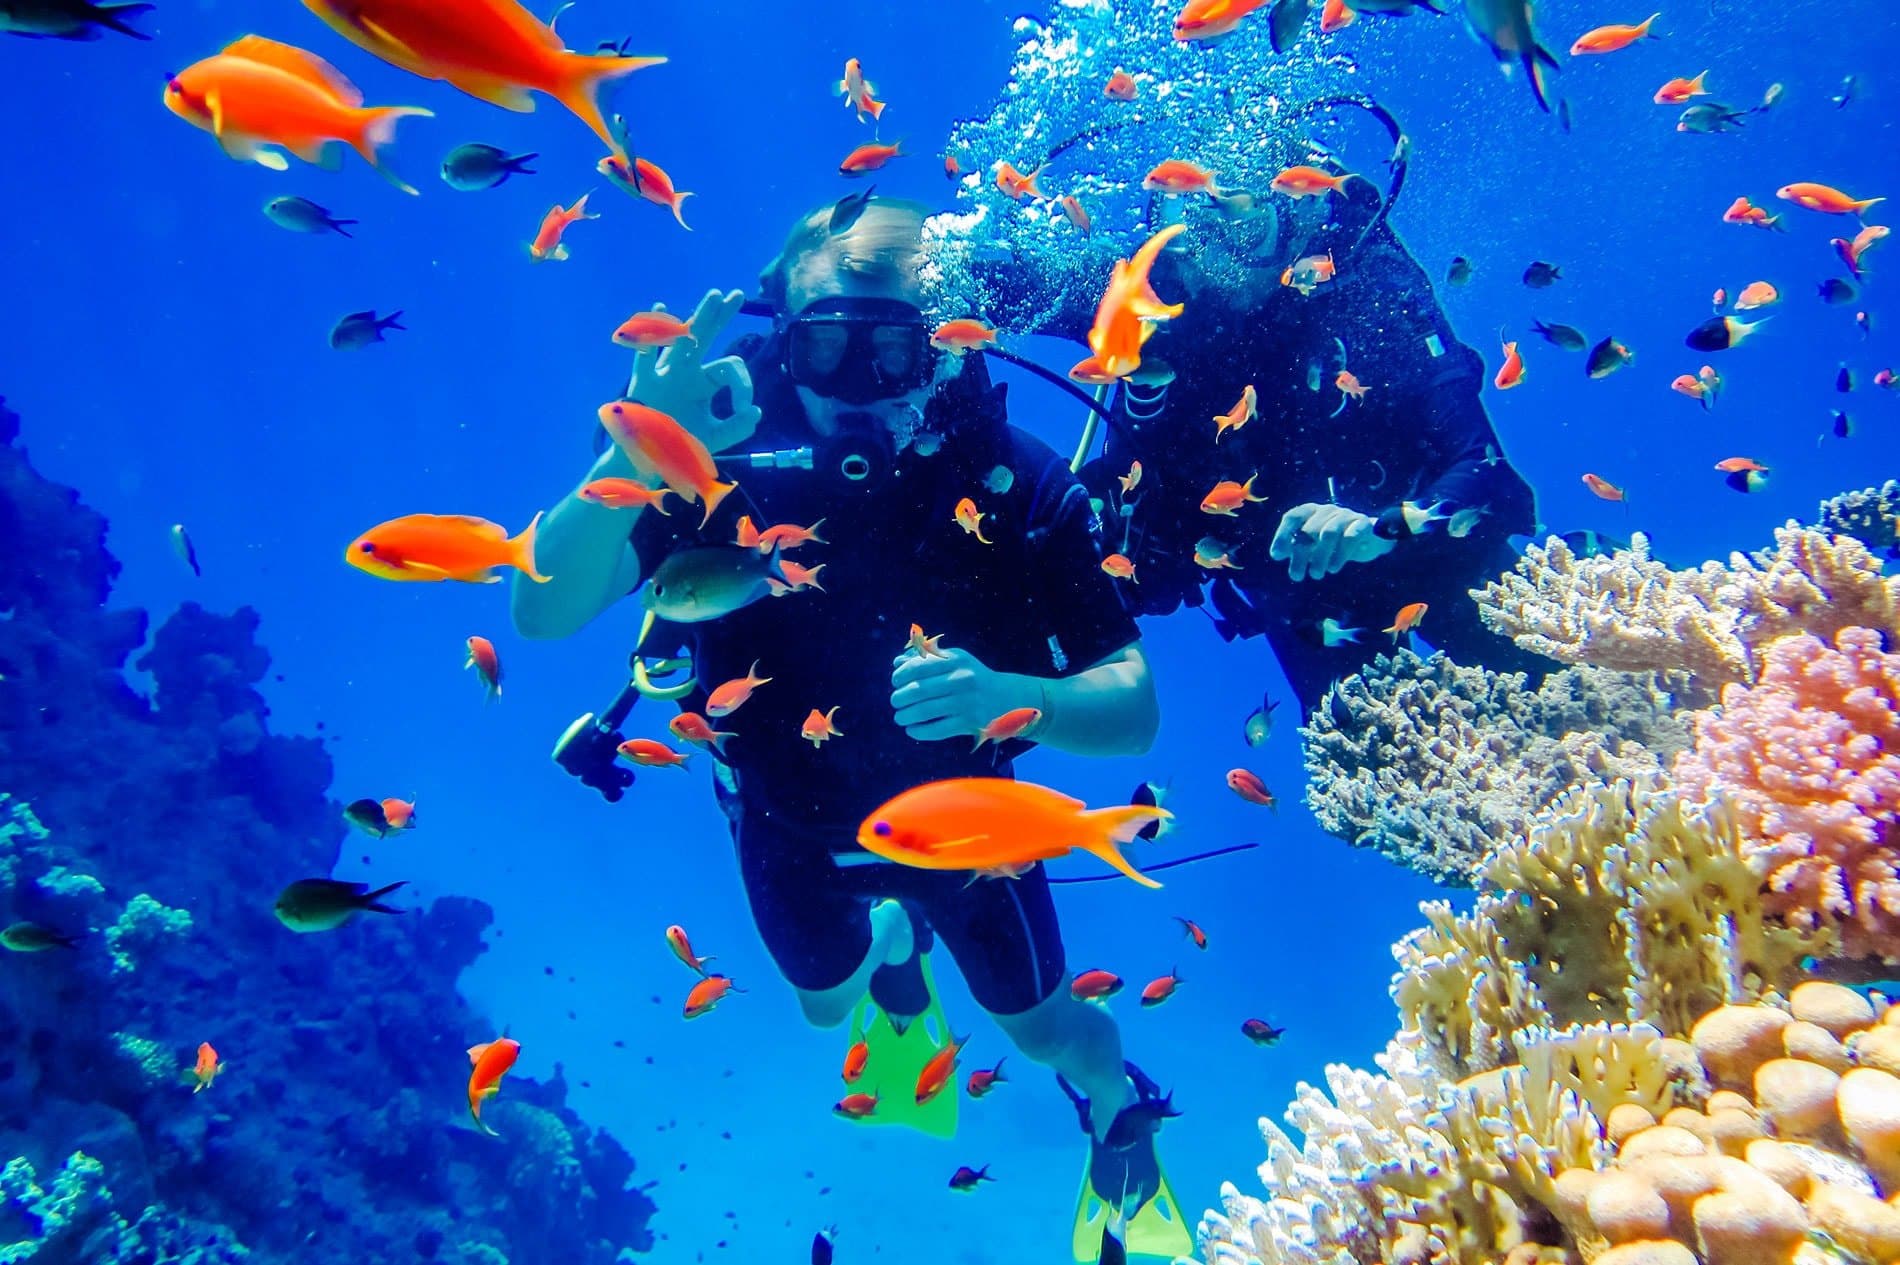 ACCUEIL-Plongée sous-marine : c'est la fête des mers